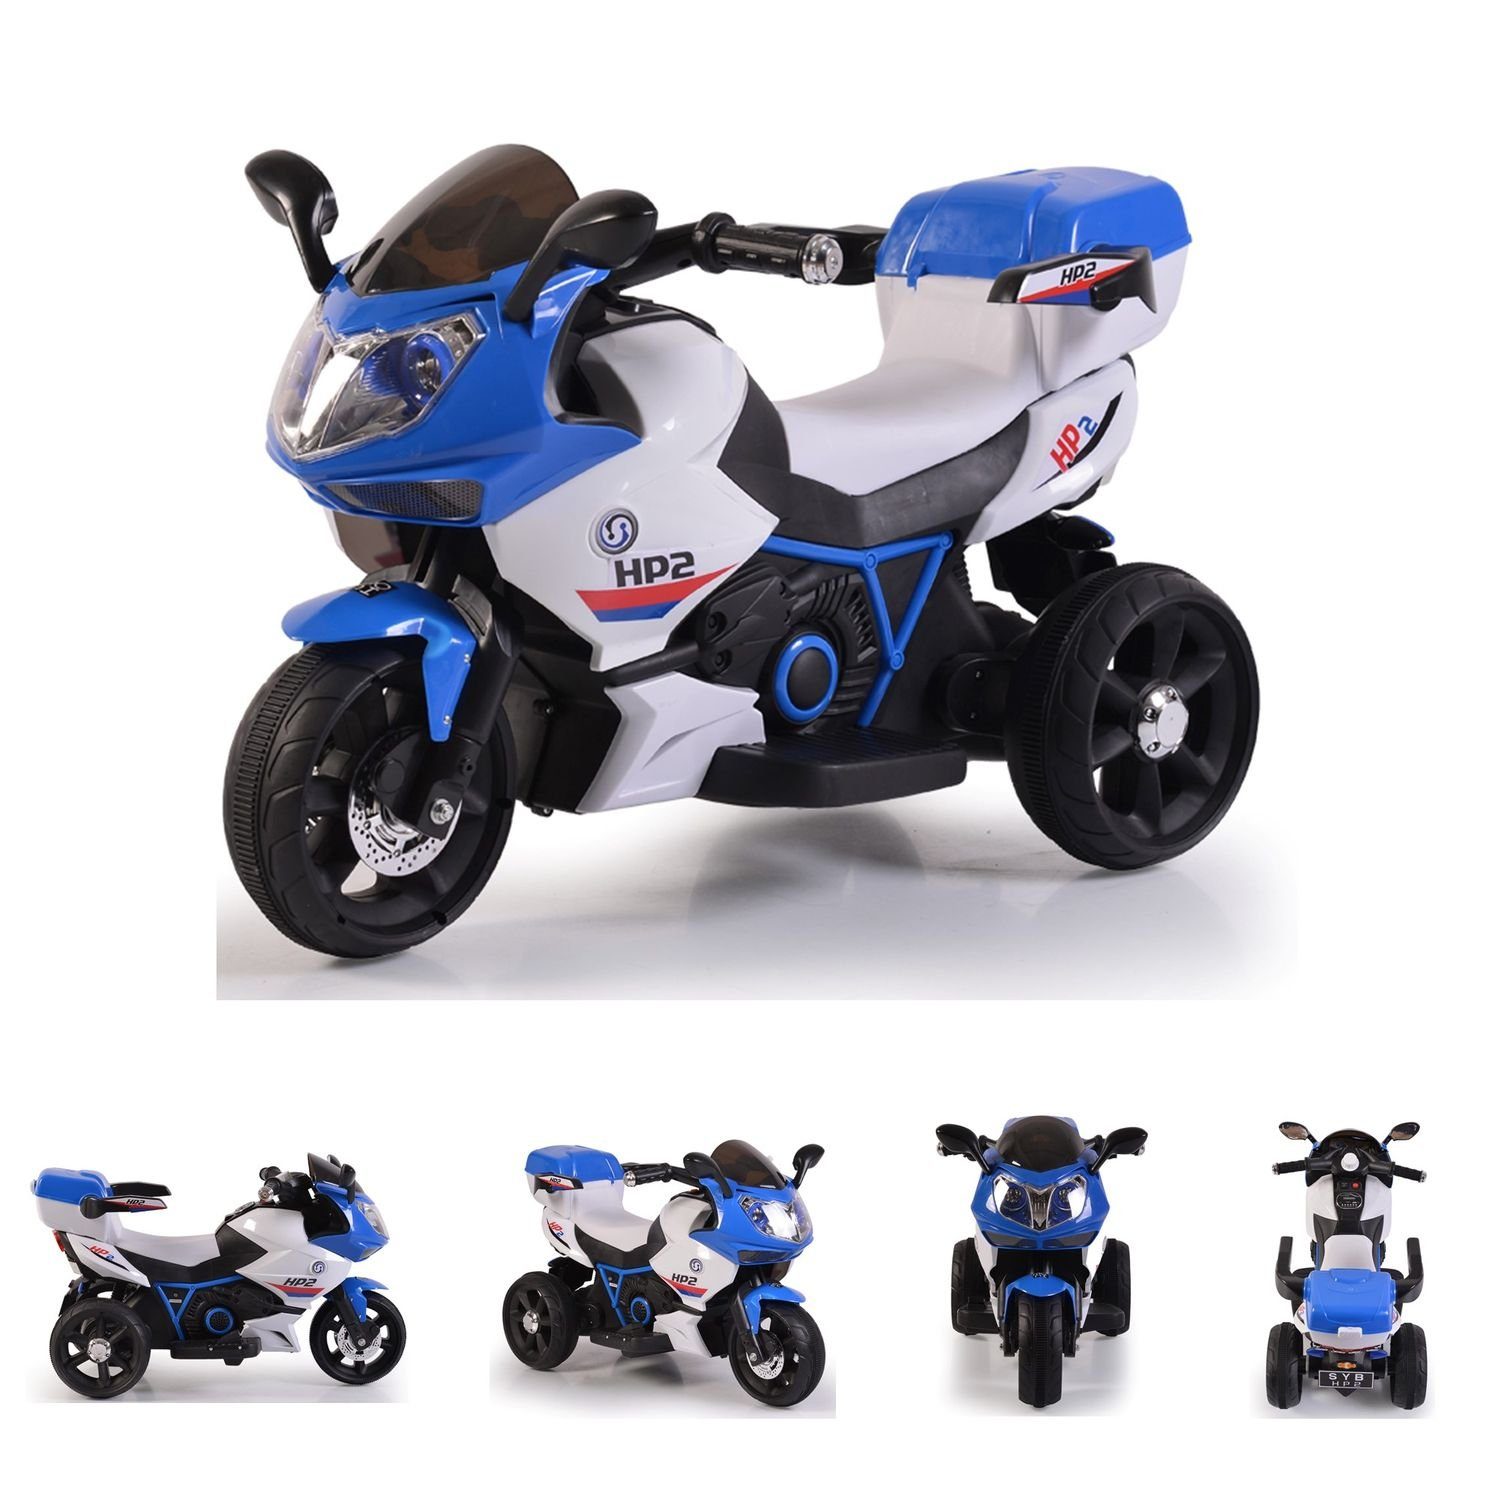 Moni Elektro-Kindermotorrad Kinder Elektromotorrad HP2 FB-6187,  Belastbarkeit 30 kg, mit Musikfunktion, Spielzeugkorb, ab 3 Jahre